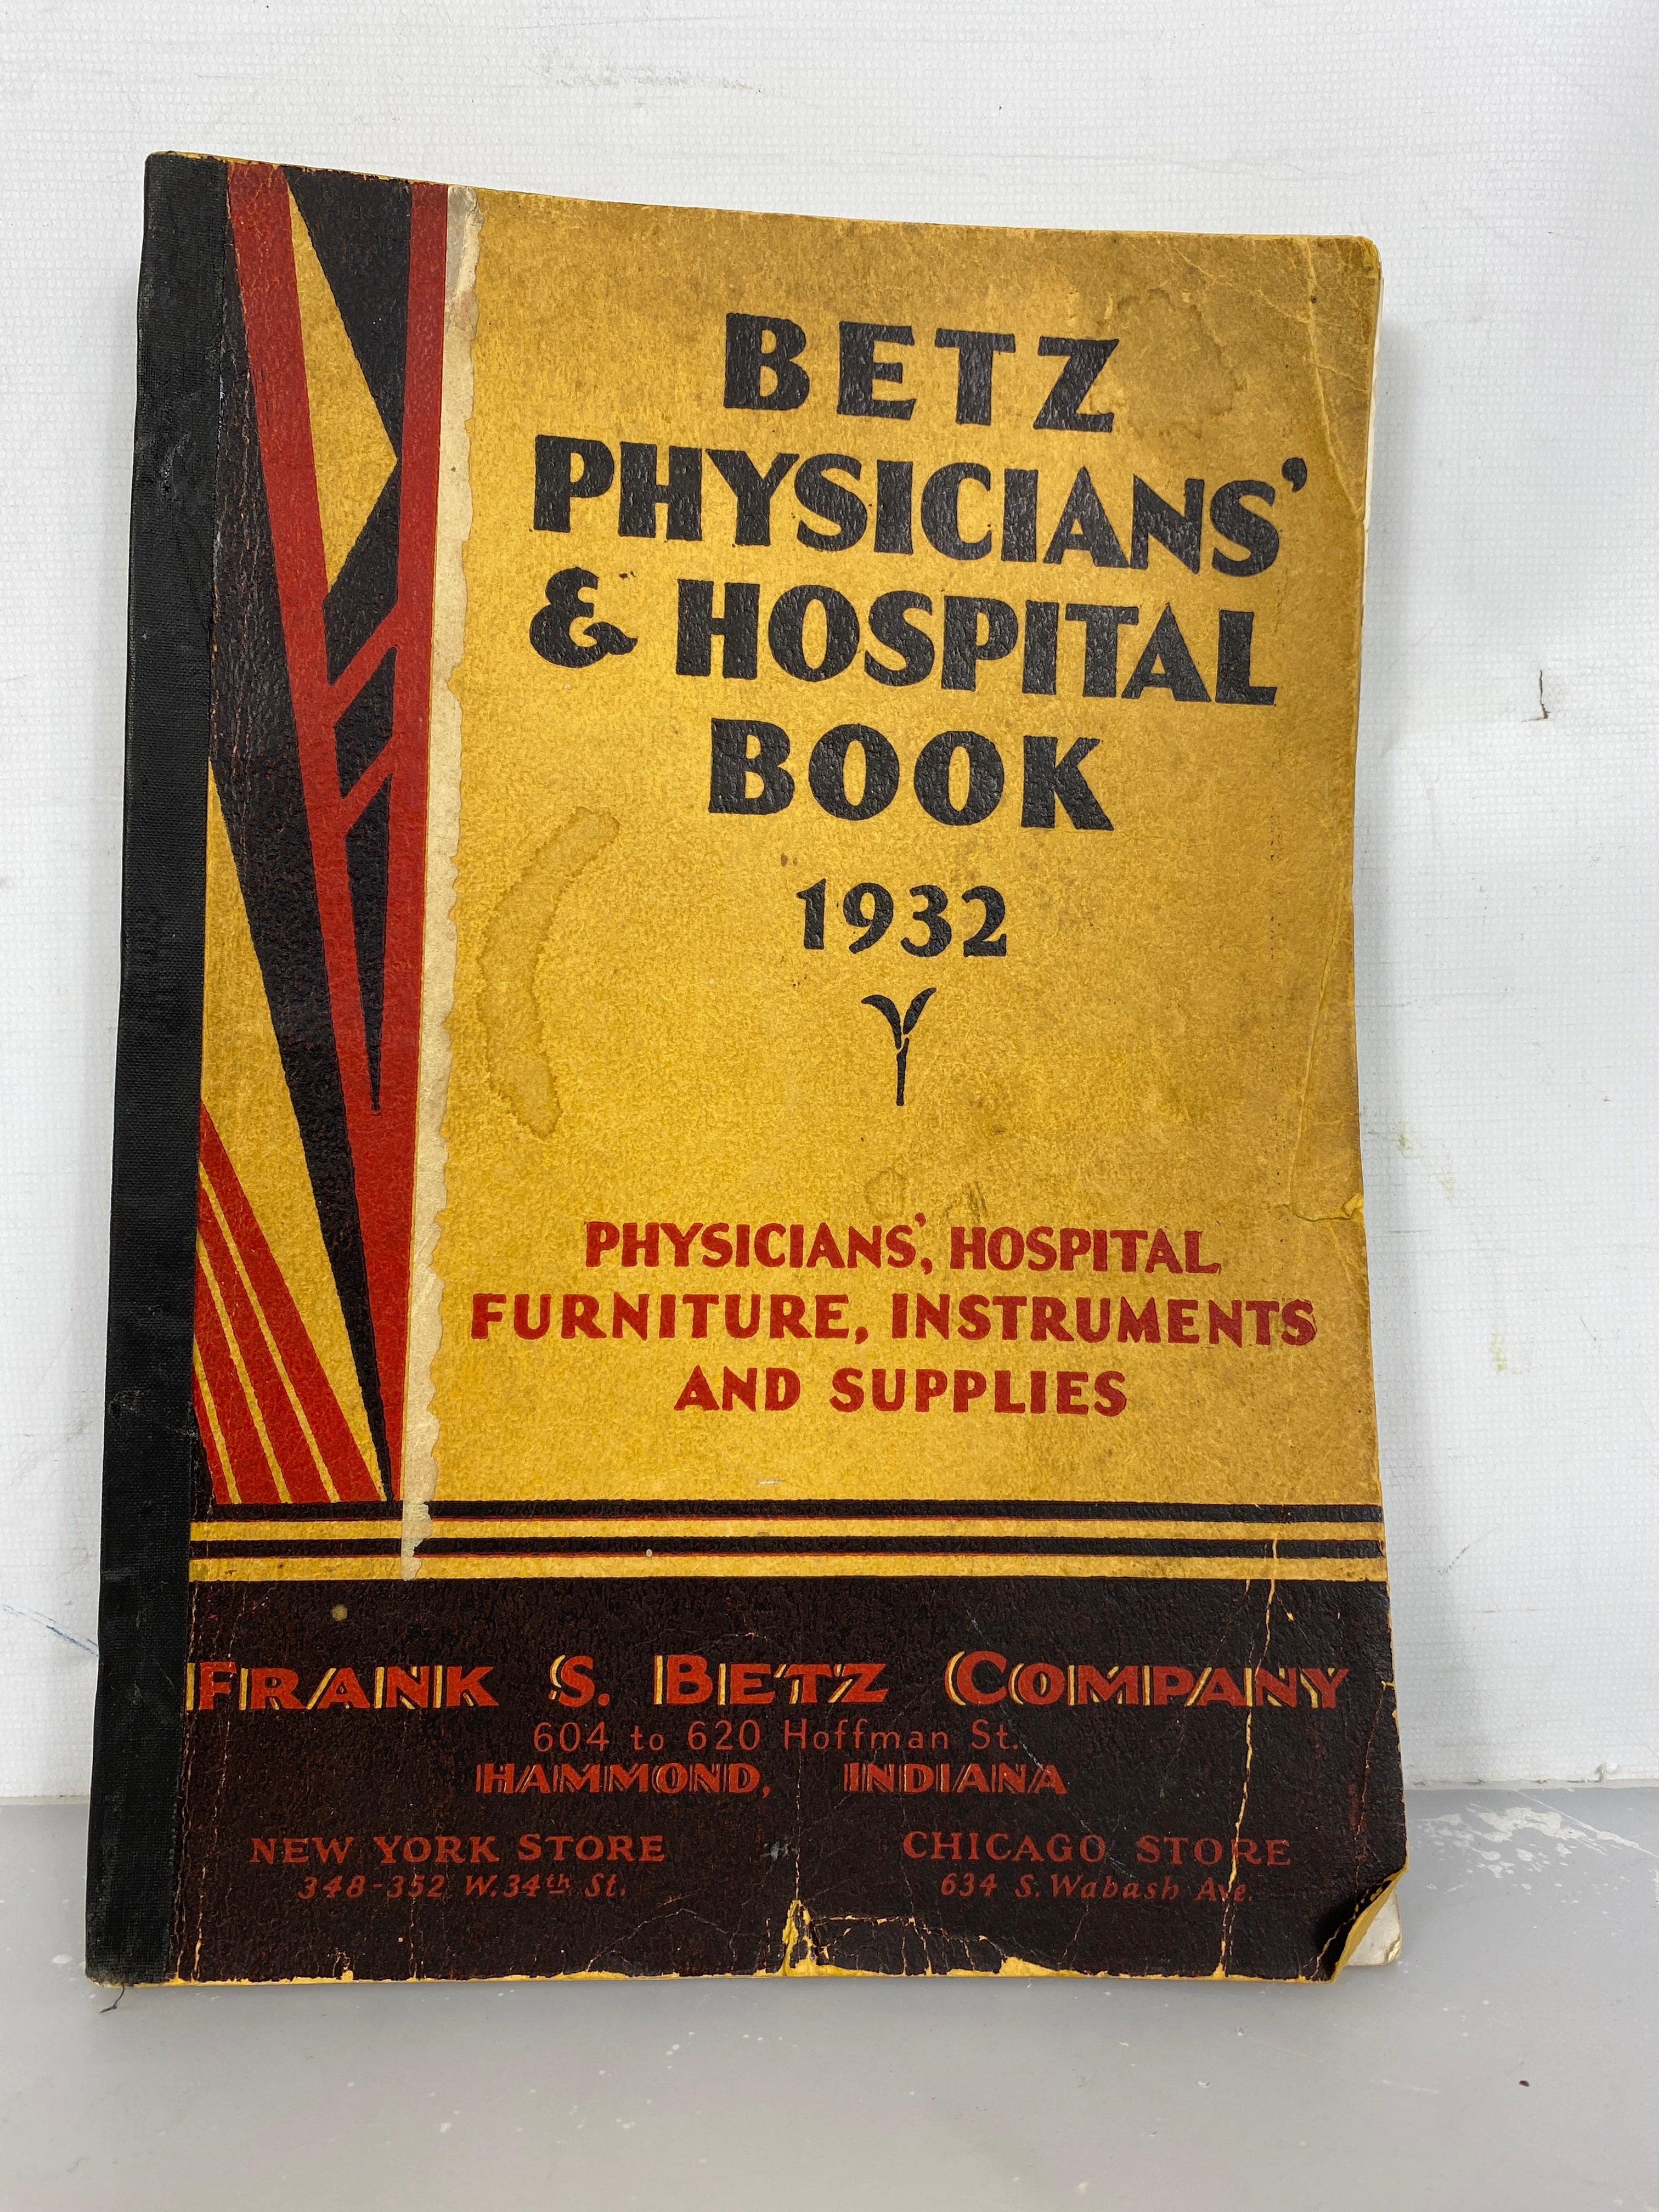 Vintage Catalog: Betz Physicians' & Hospital Book 1932 SC